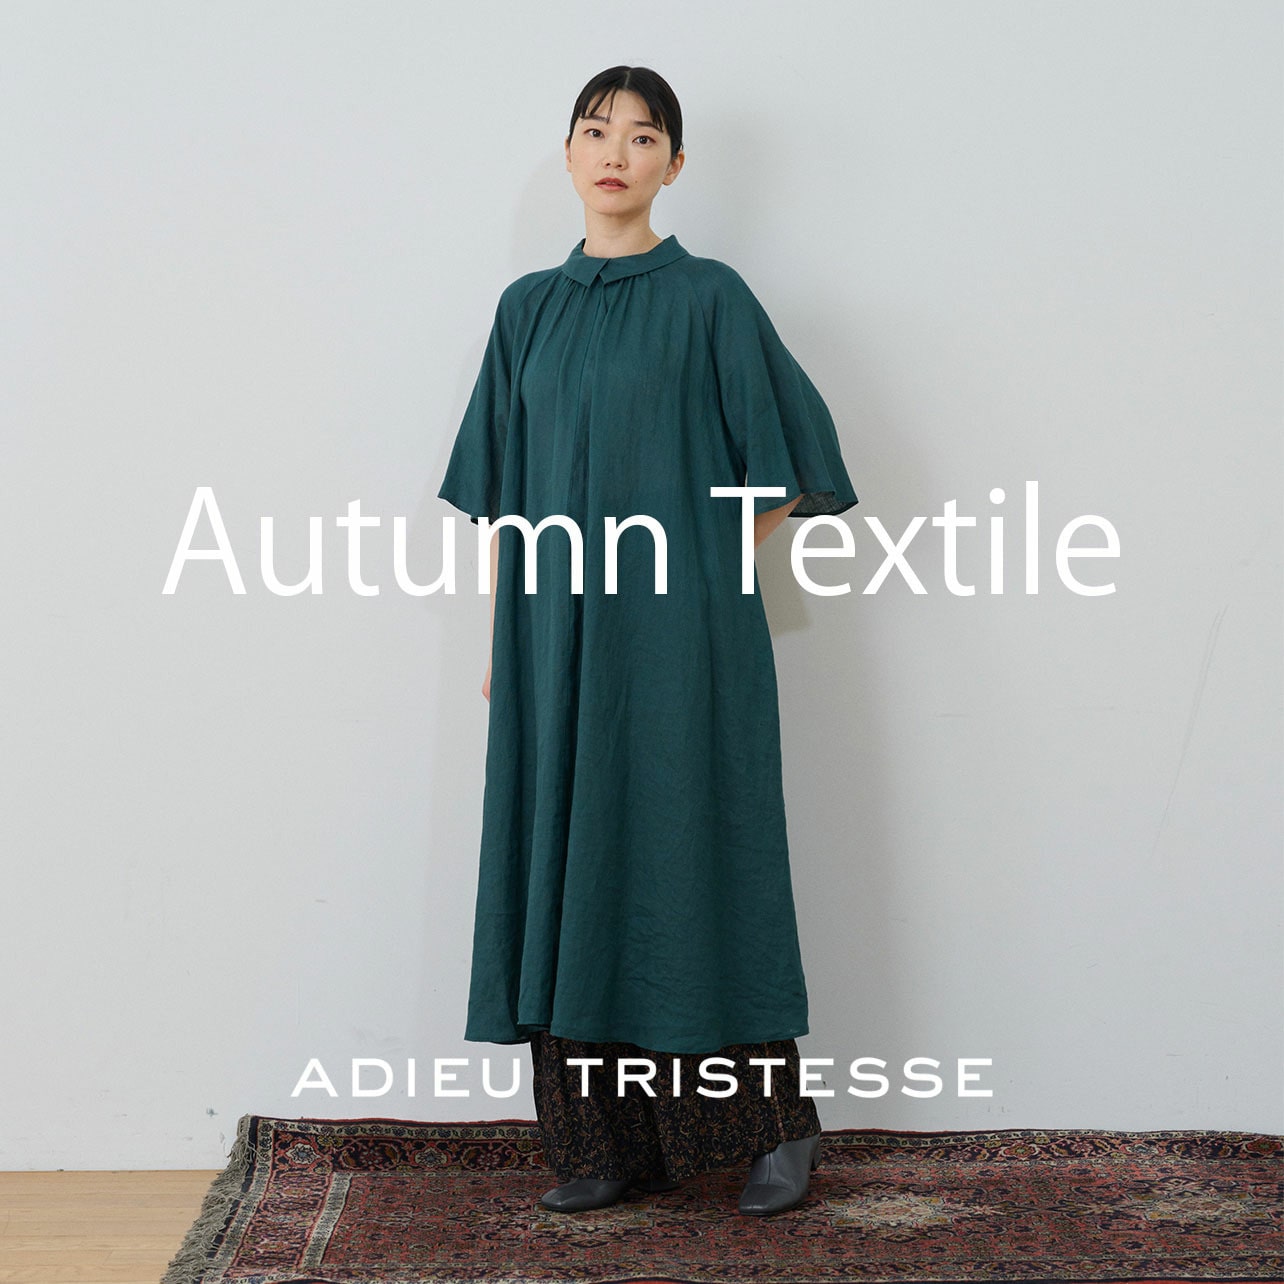 Autumn Textile